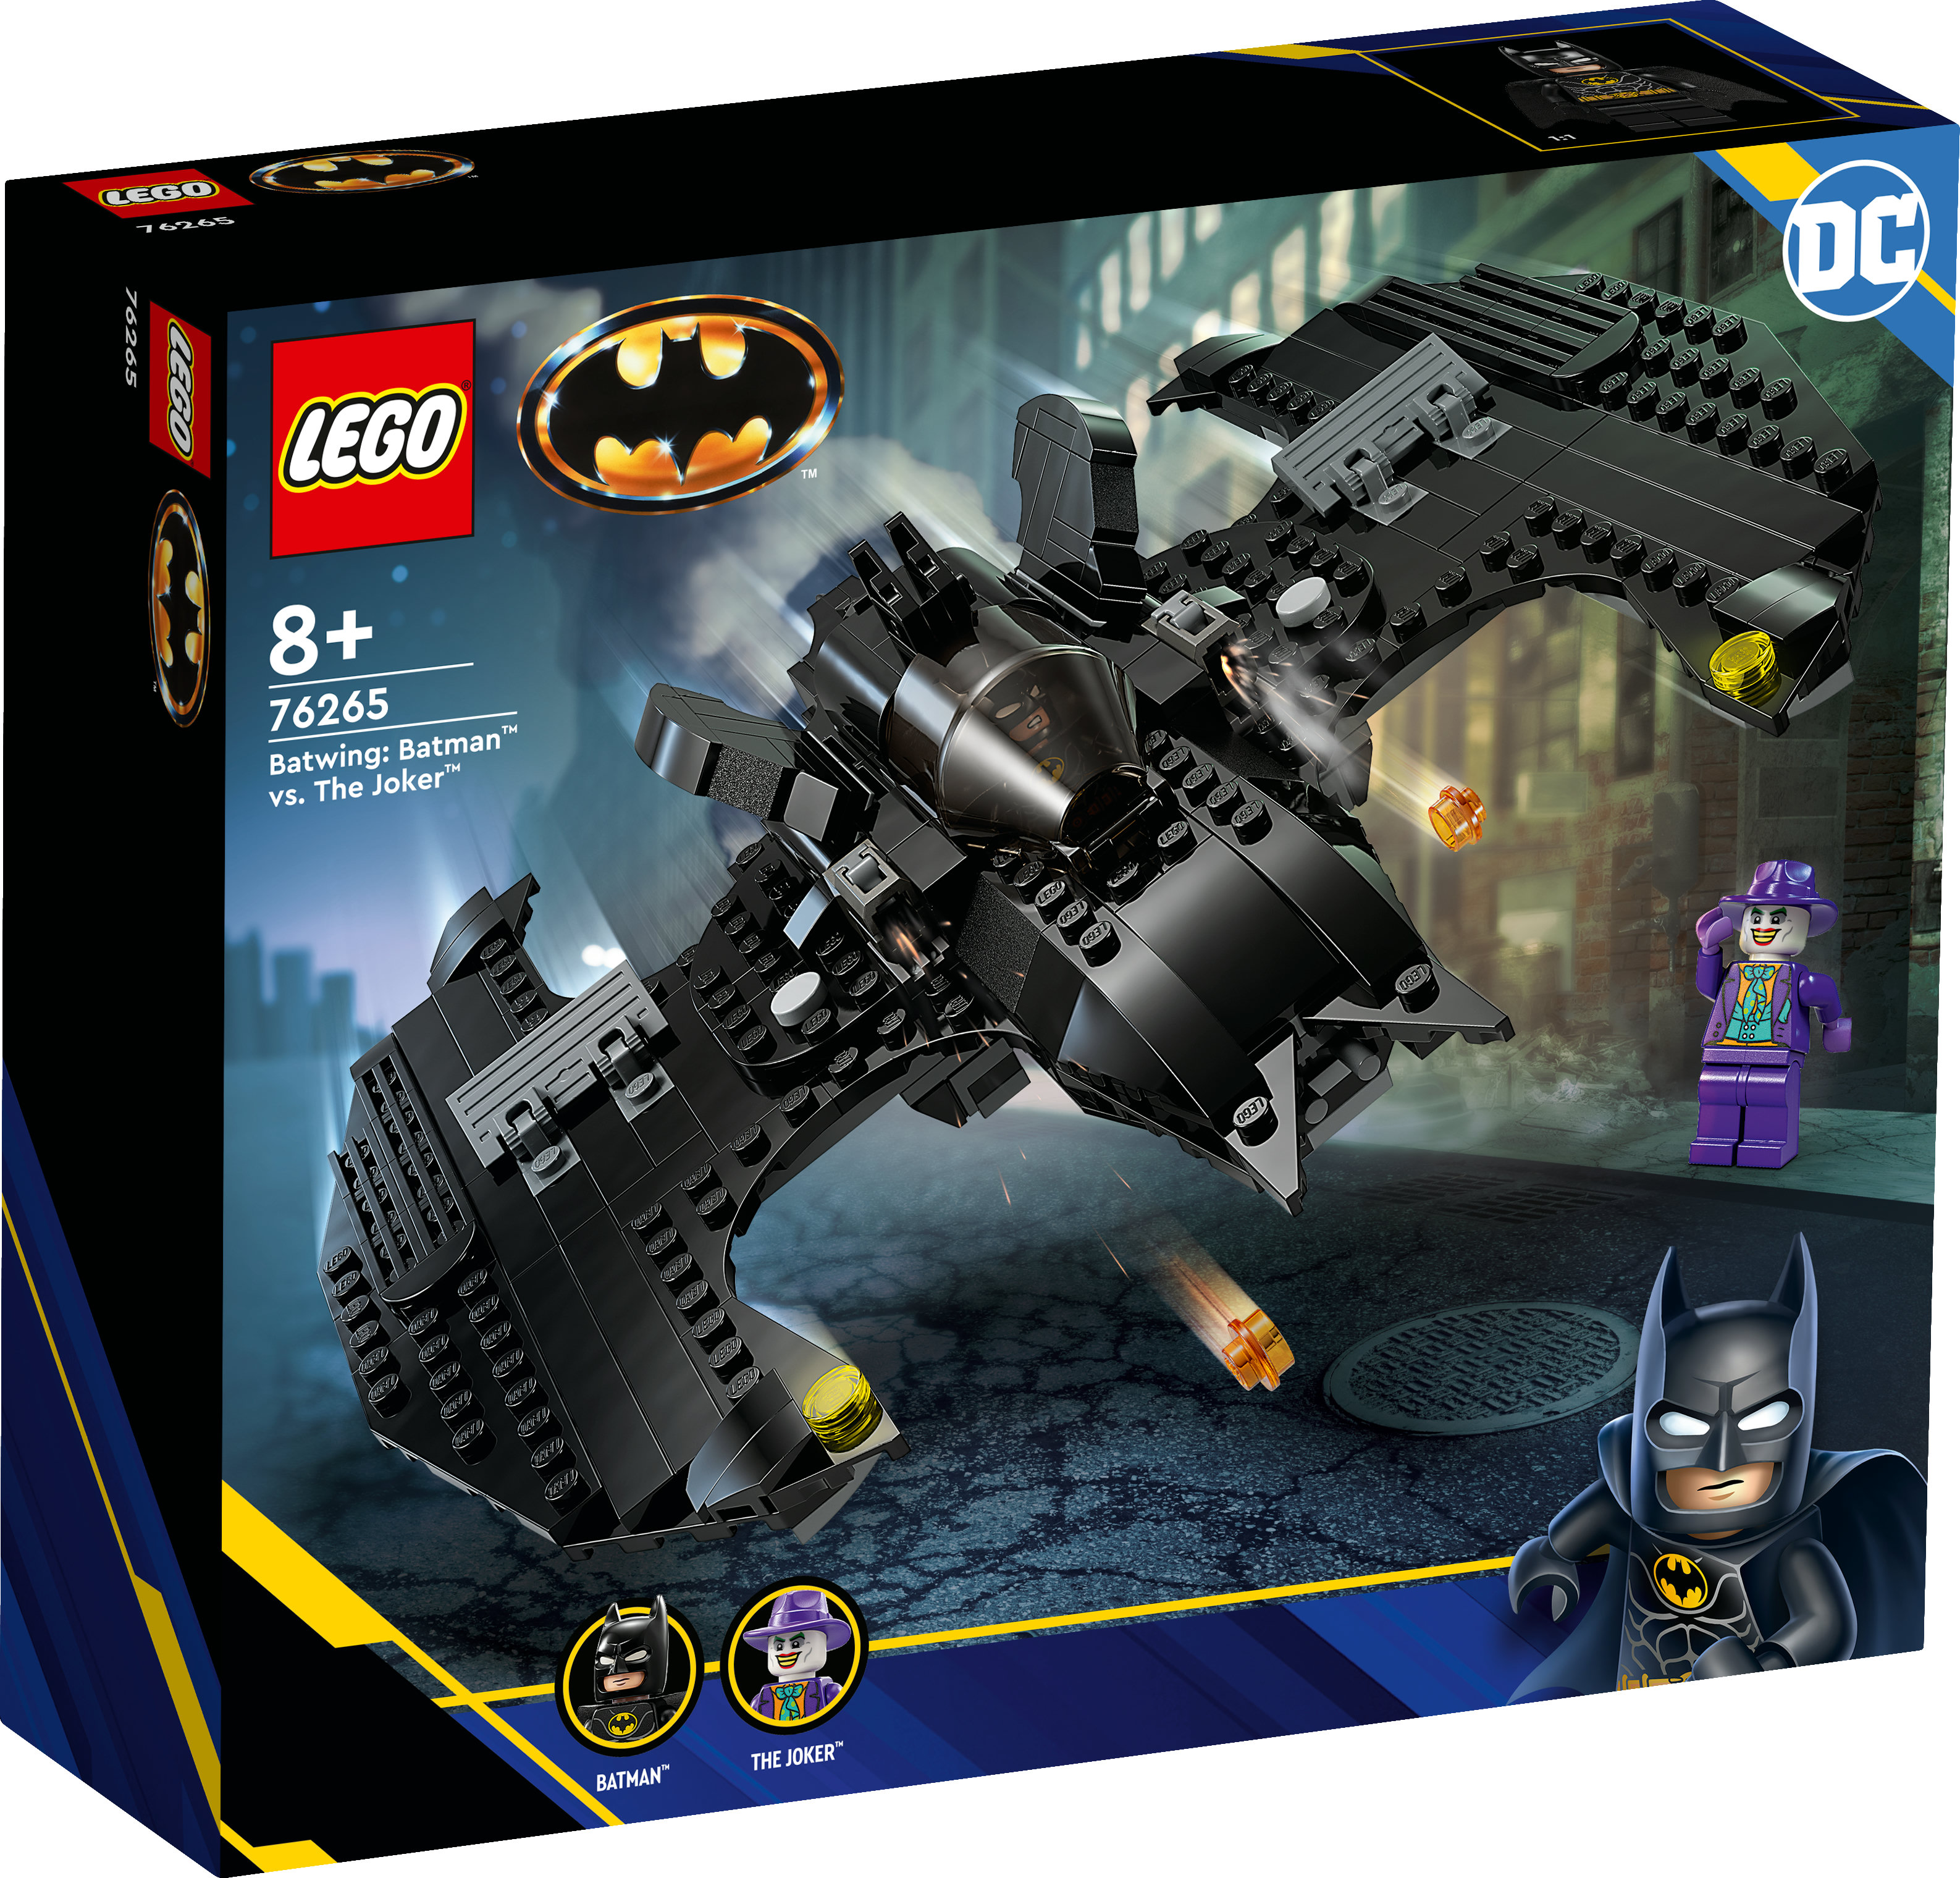 LEGO DC Comics Super Heroes 76265 Batwing Batman vs Joker